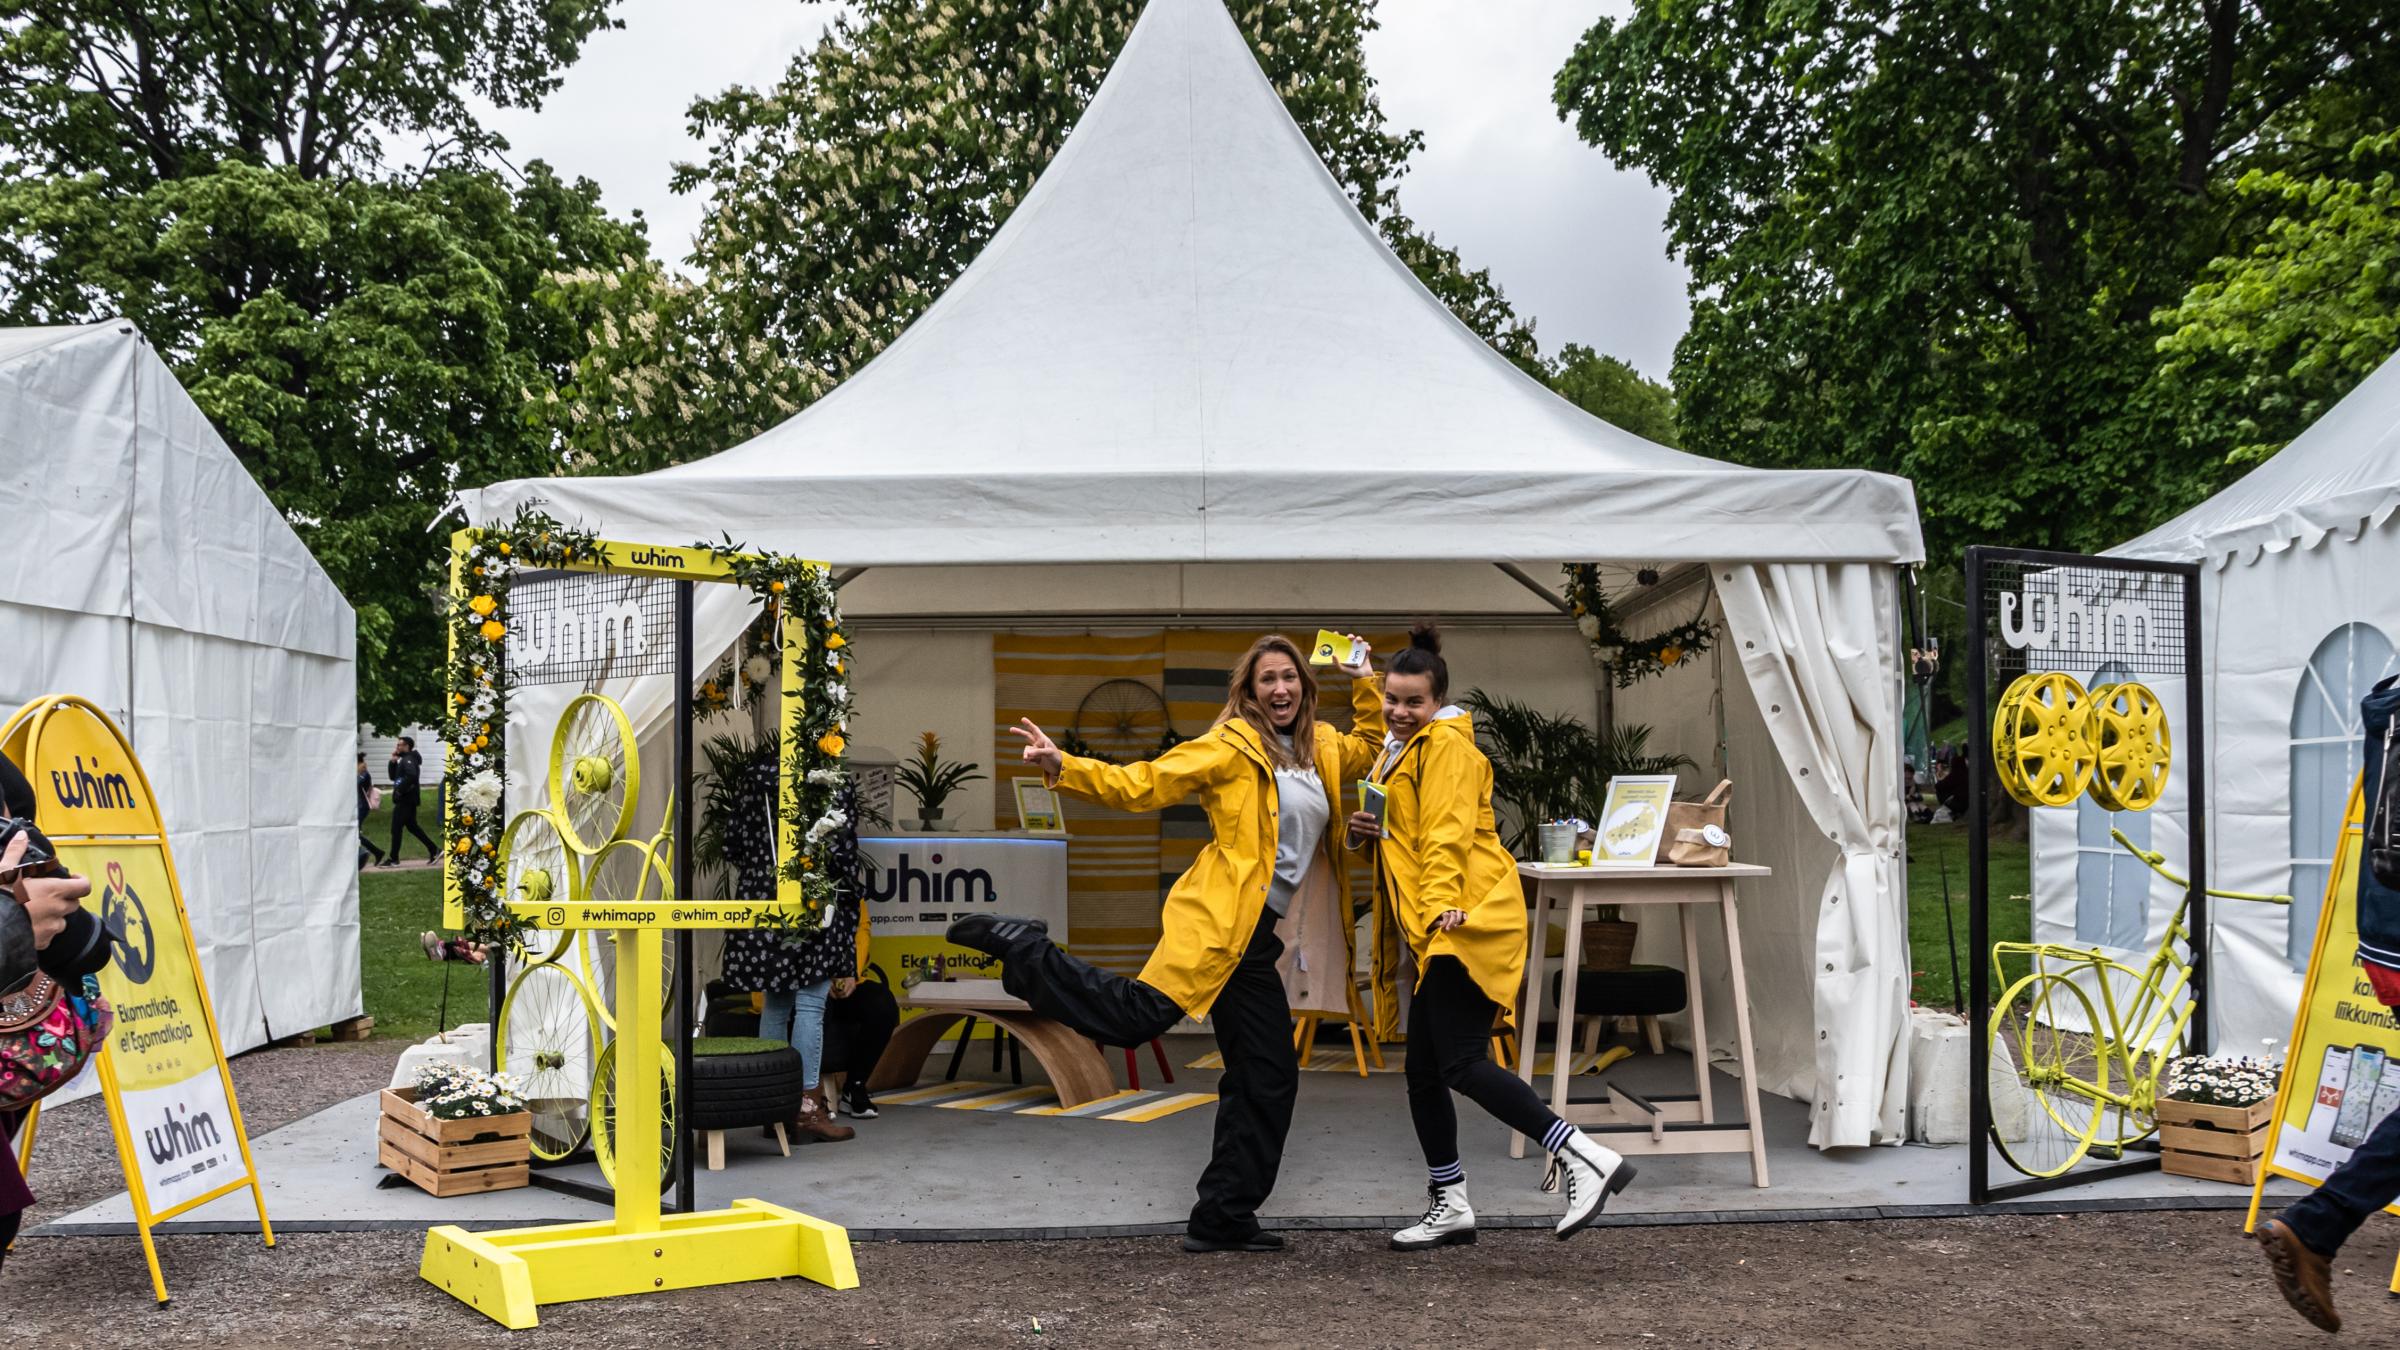 Kuvassa 2 ihmistä keltaisissa sadetakeissa Whim-appin näytteilleasettajapisteellä Maailma kylässä -festivaalilla 2019